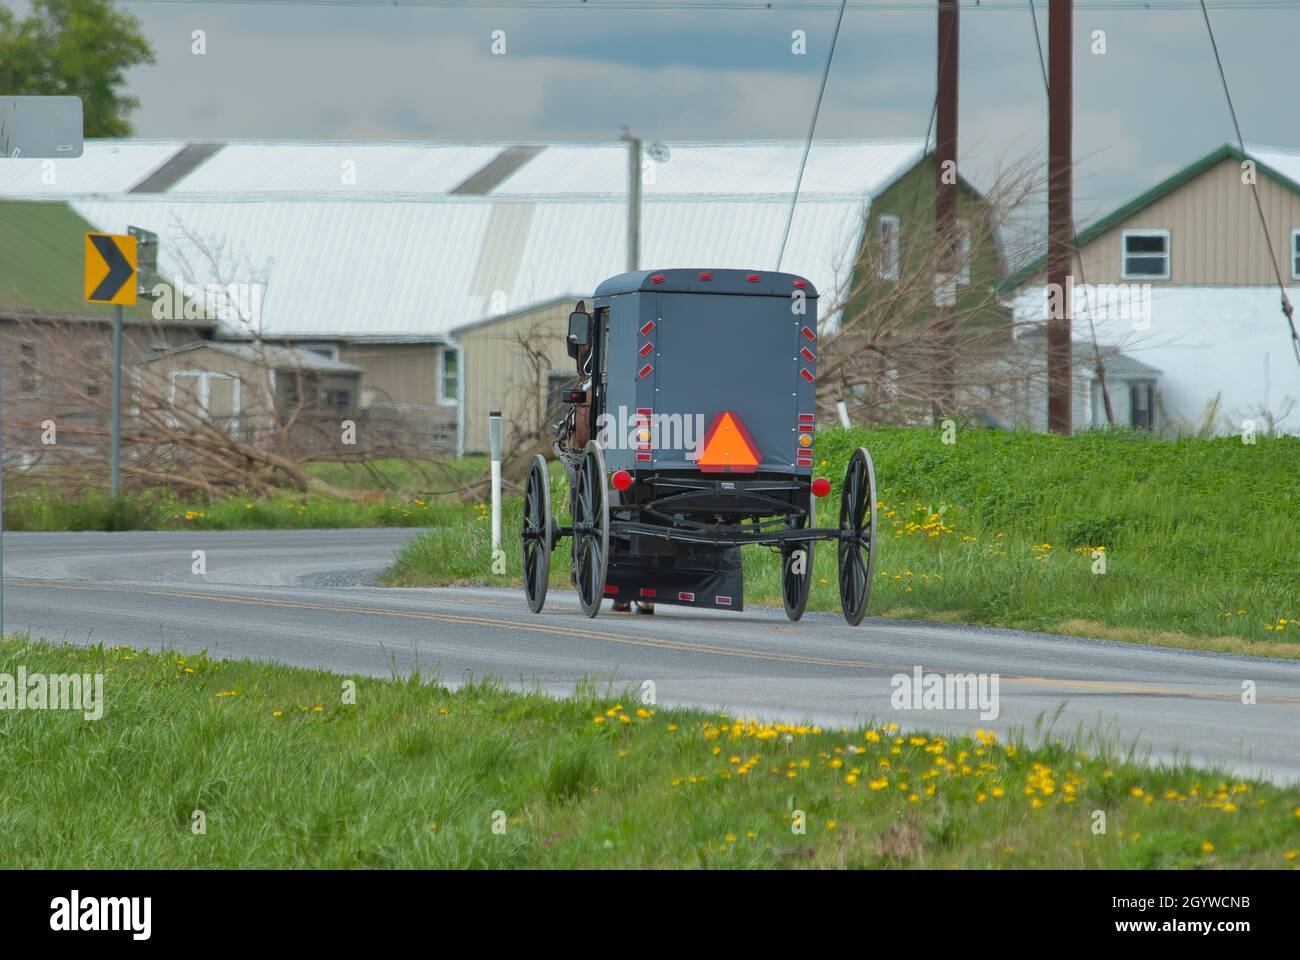 Ein Amish Horse und Buggy Reisen entlang einer Landstraße durch Ackerland an einem Frühlingstag Stockfoto